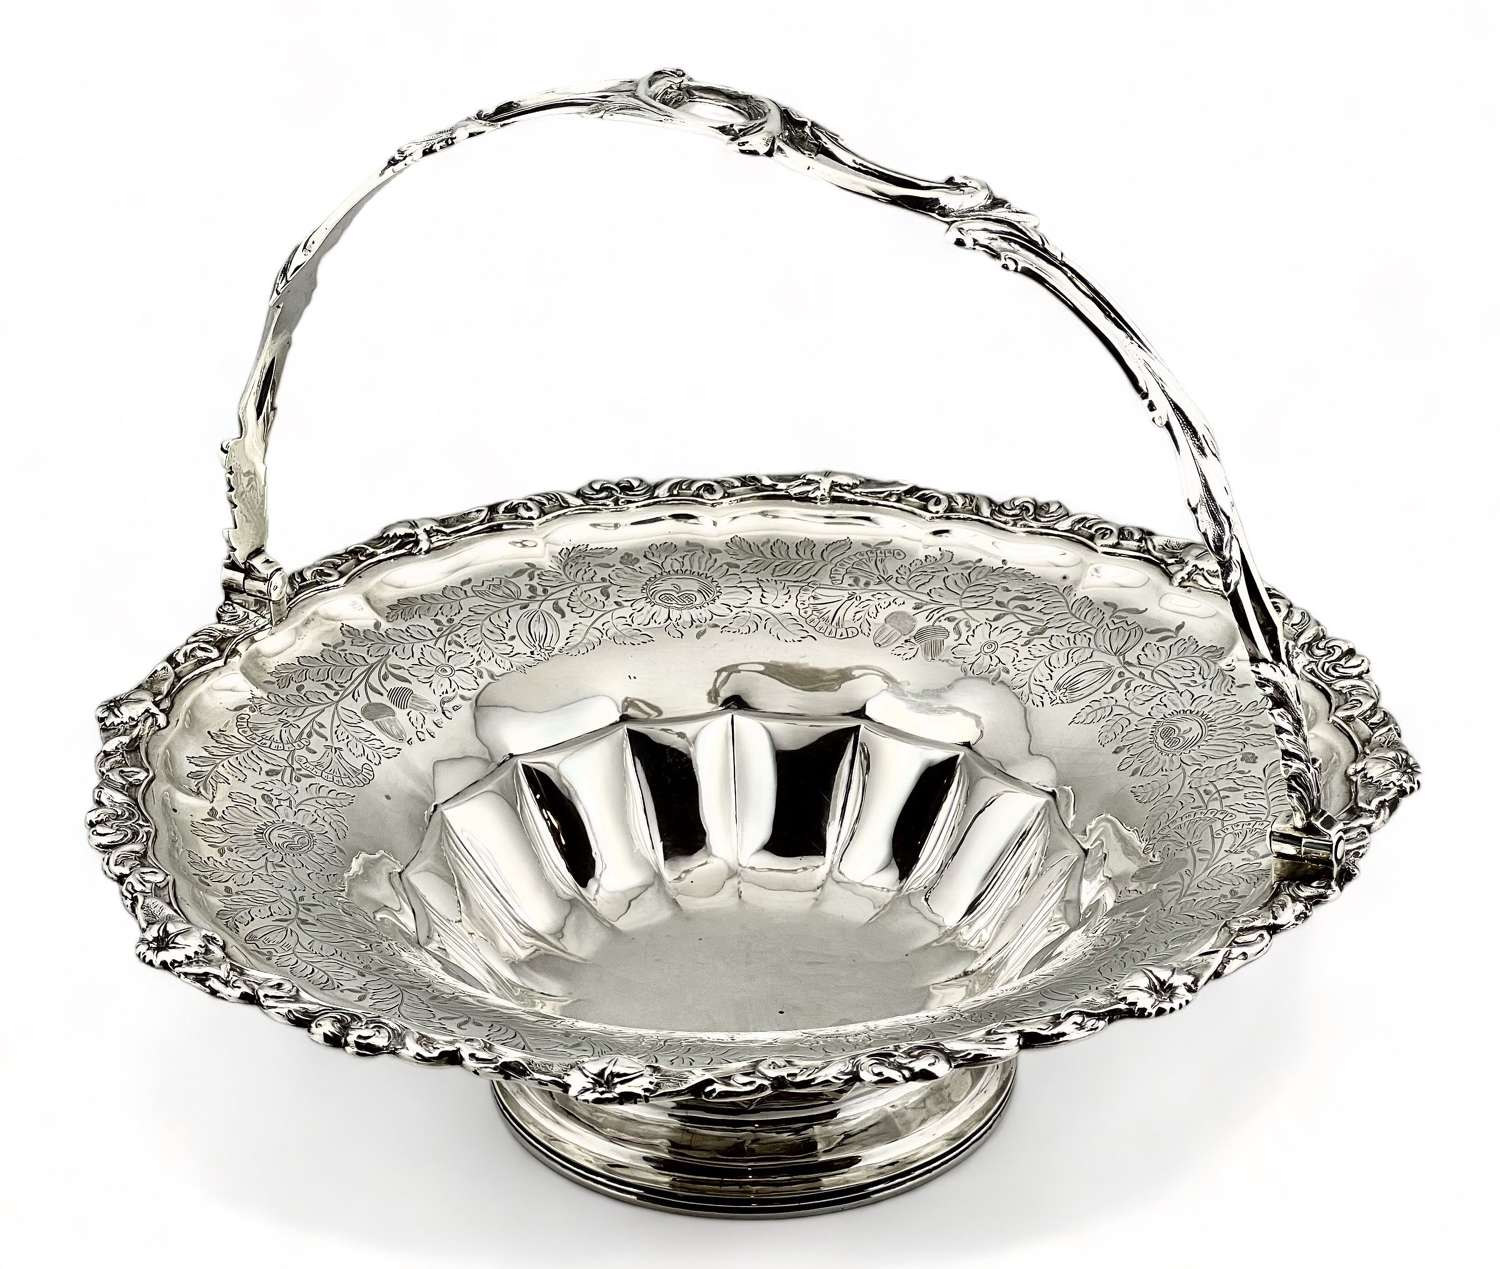 George III Newcastle silver bread basket. John Walton 1814